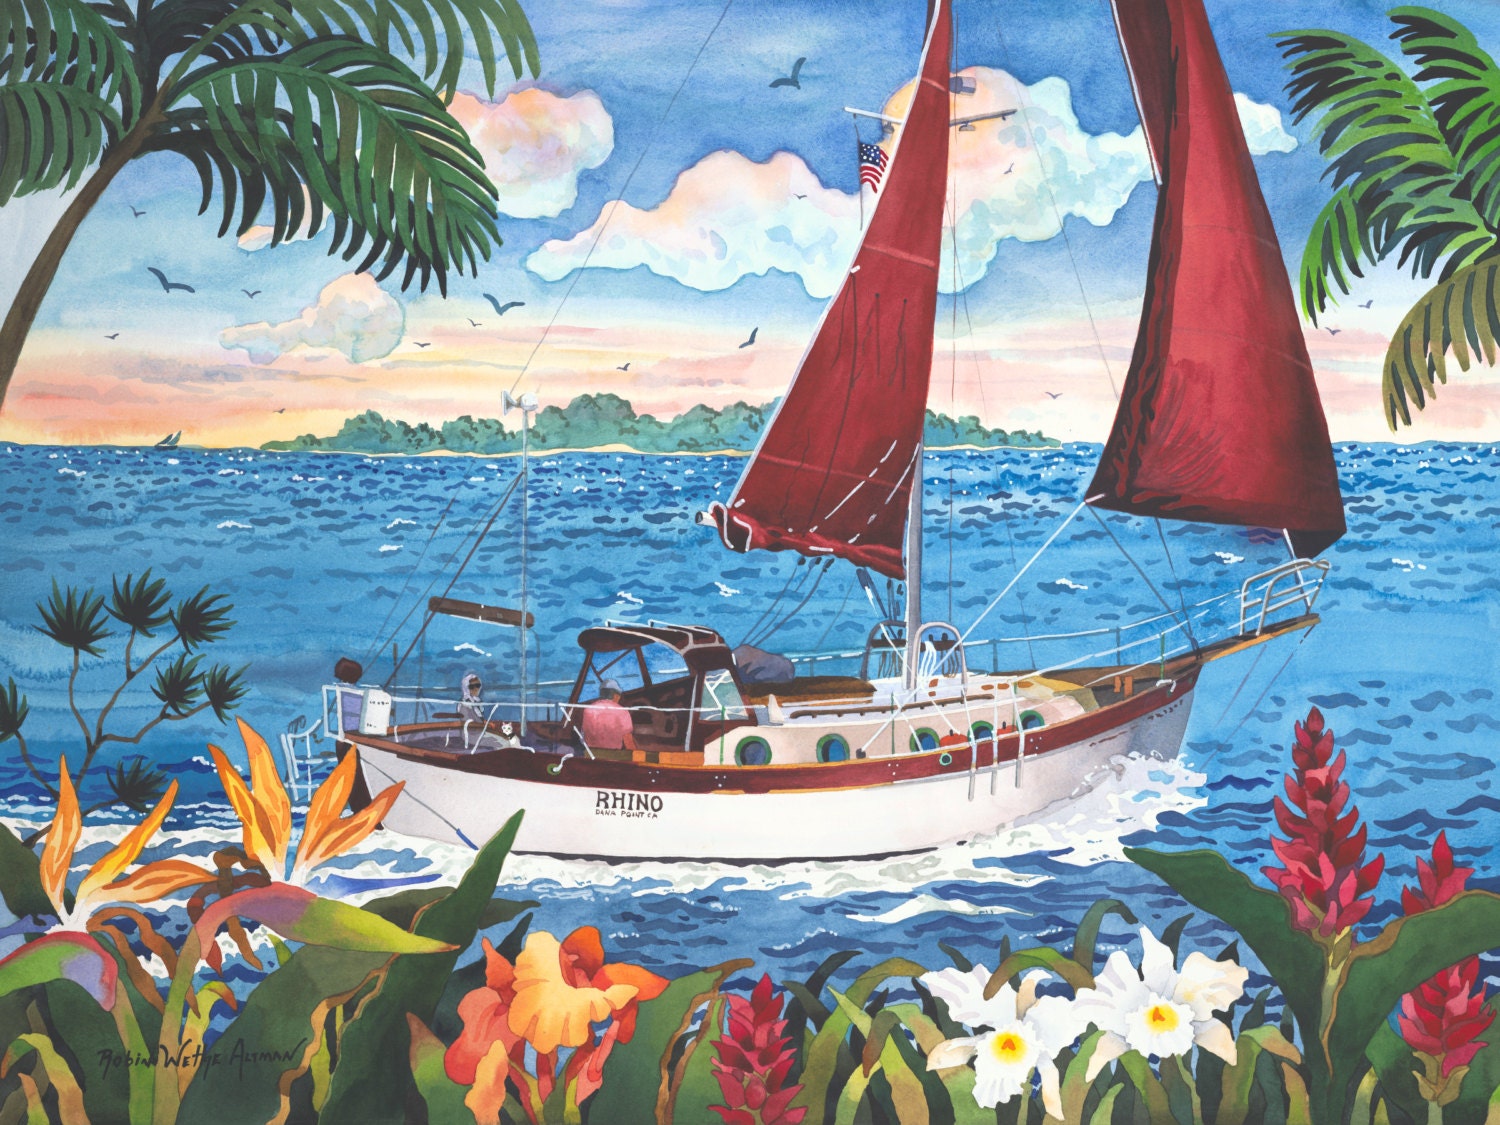 sail to hawaii sailboat